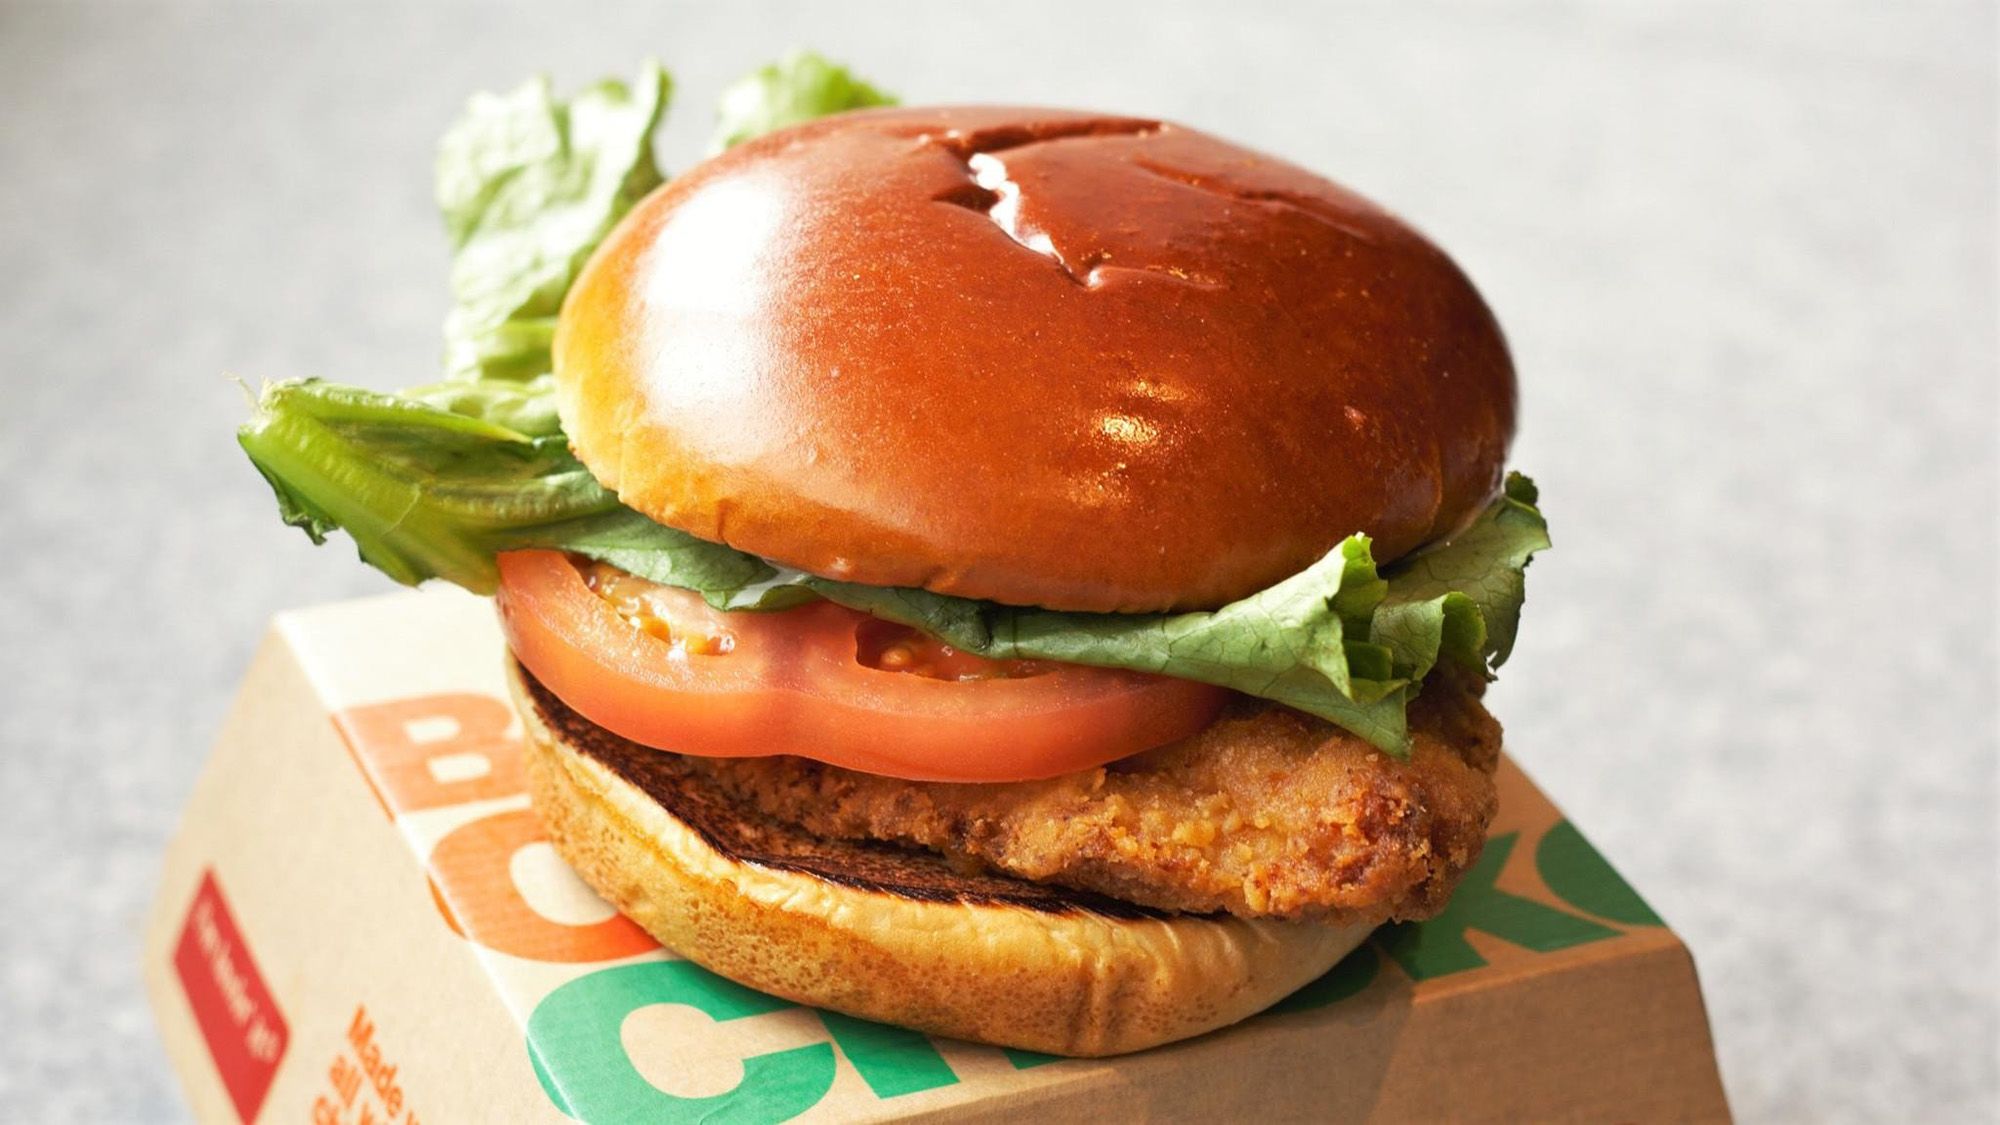 Chicken helps McDonald's sales soar